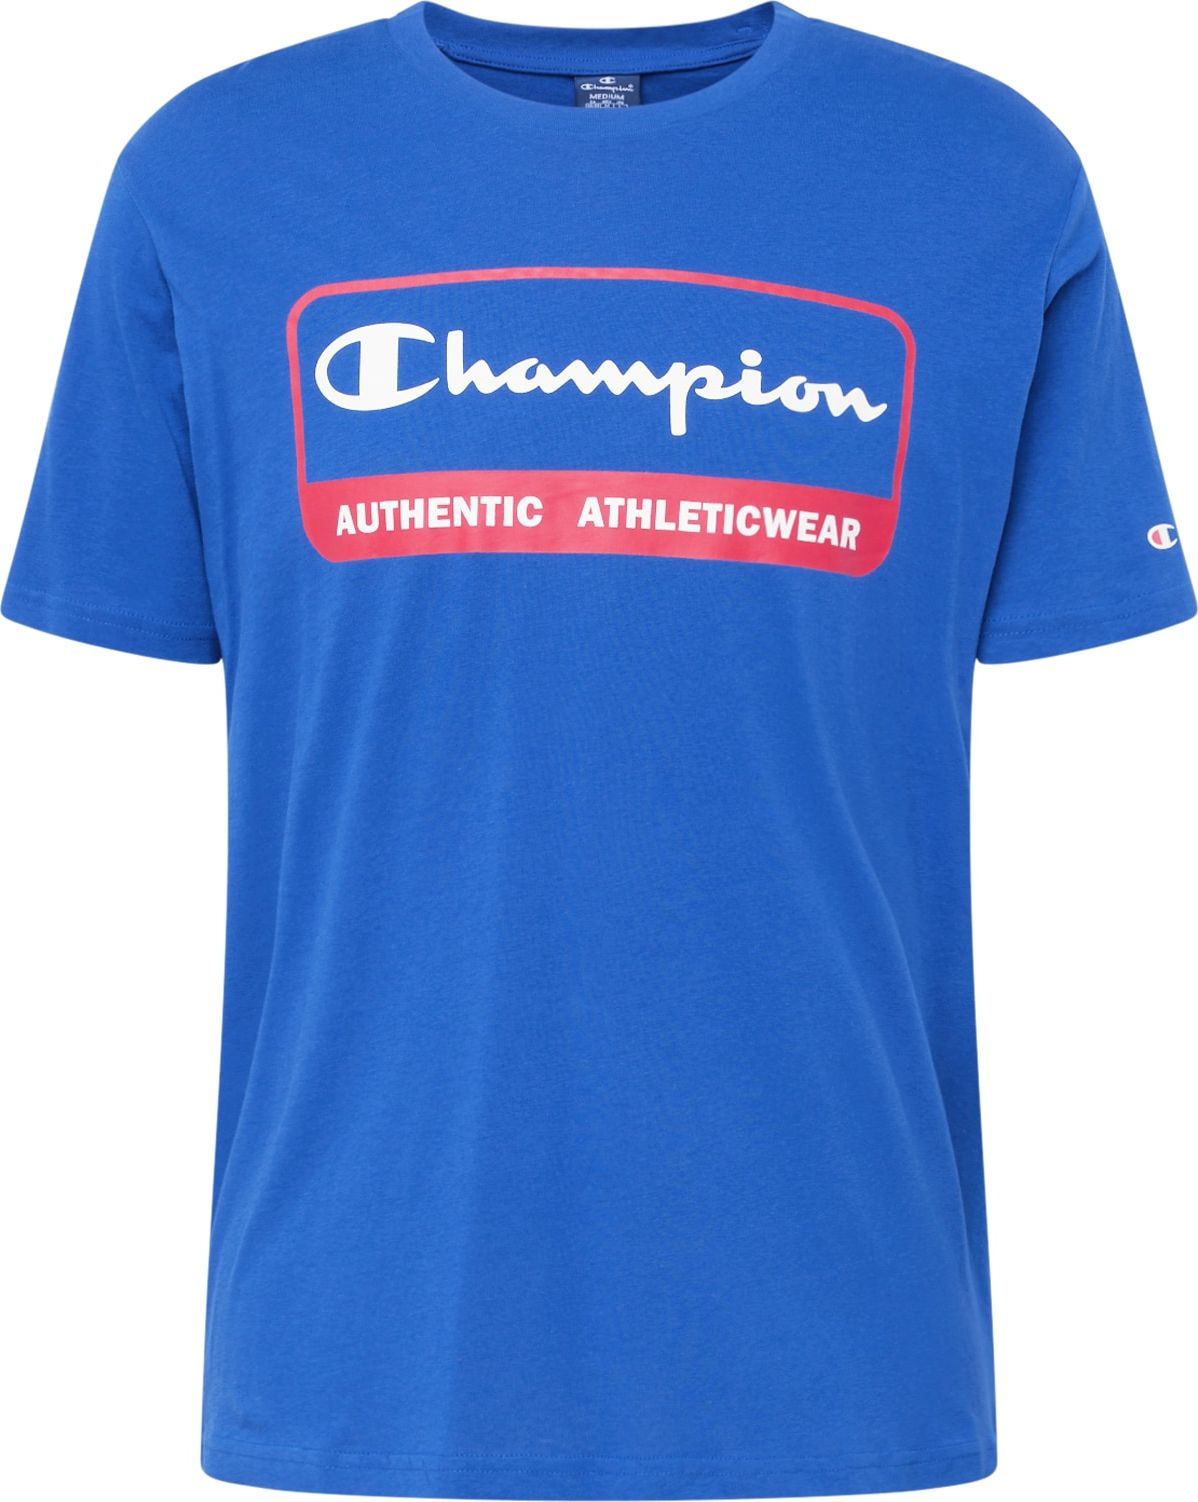 Tričko Champion Authentic Athletic Apparel královská modrá / červená / bílá